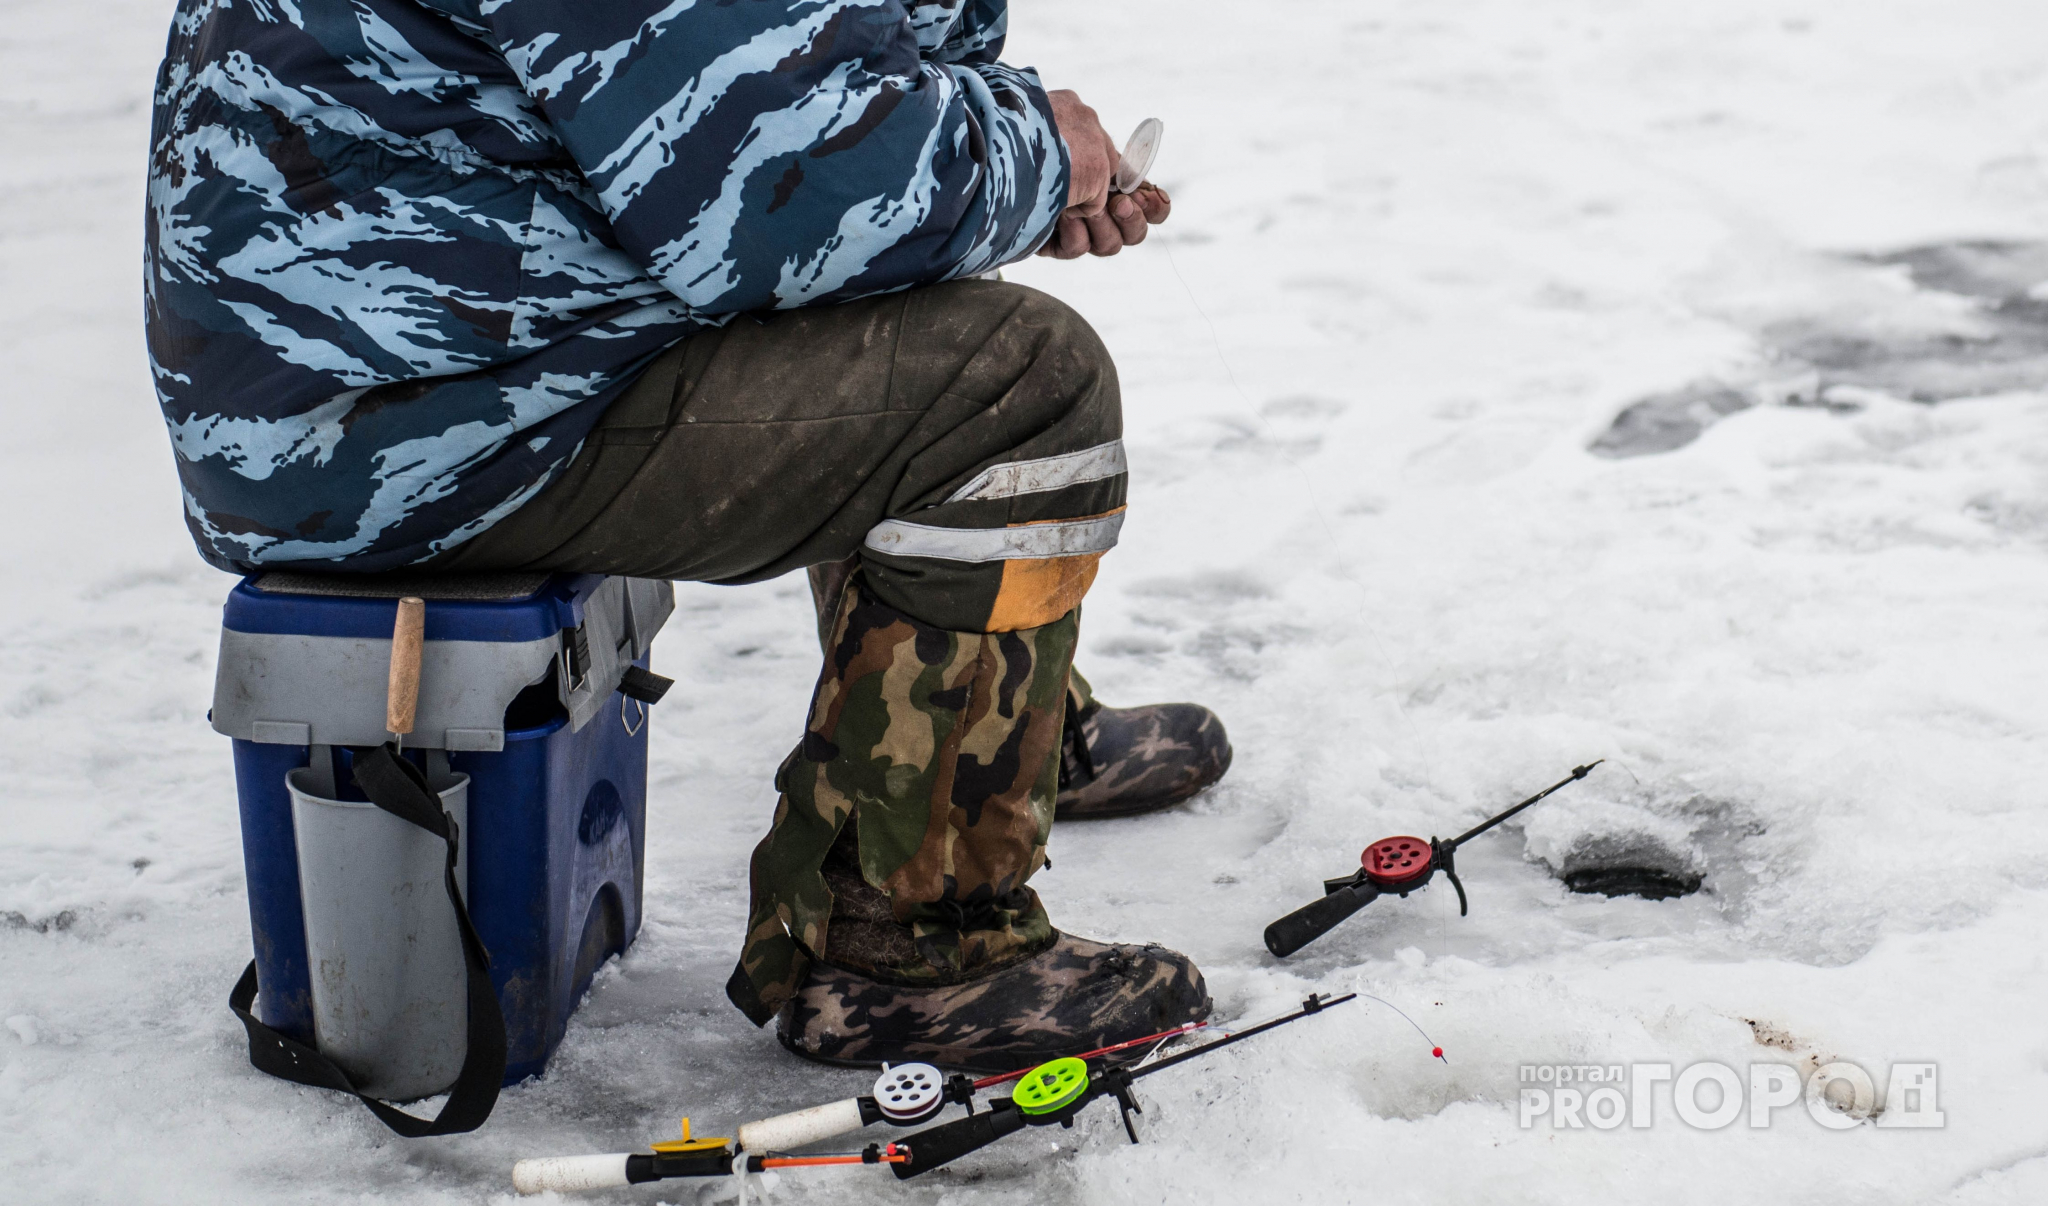 Утром рыбак провалился под лед в районе Новосельского пляжа